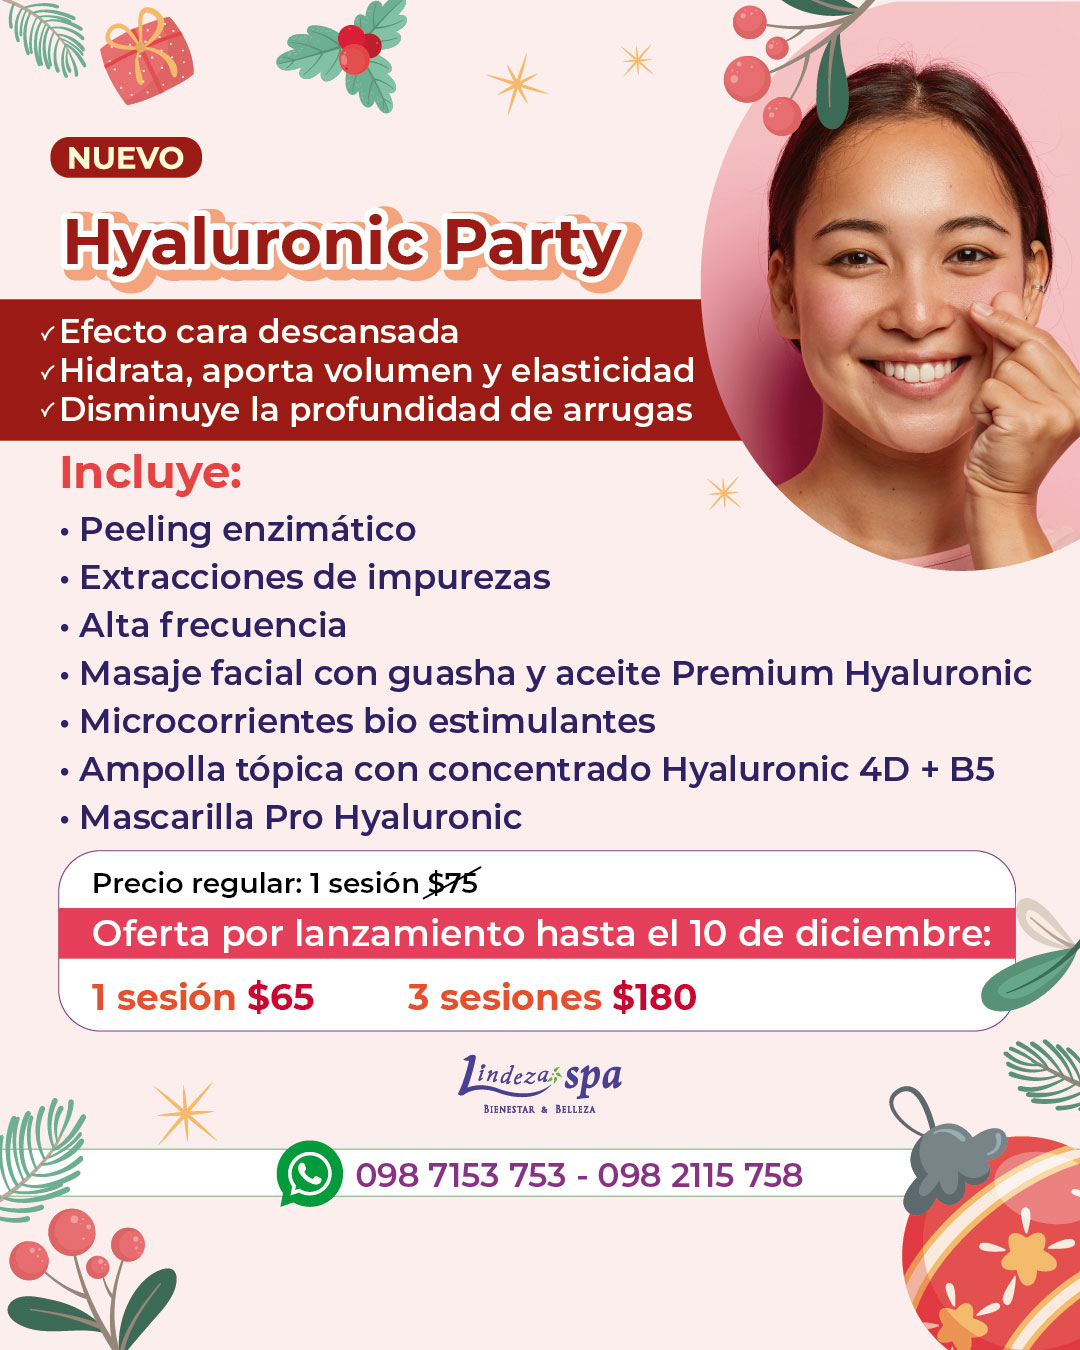 Hyaluronic Party, acido hialuronico, cuidado de la piel, rejuvenecimiento sin agujas, spa Guayaquil, microcorrientes